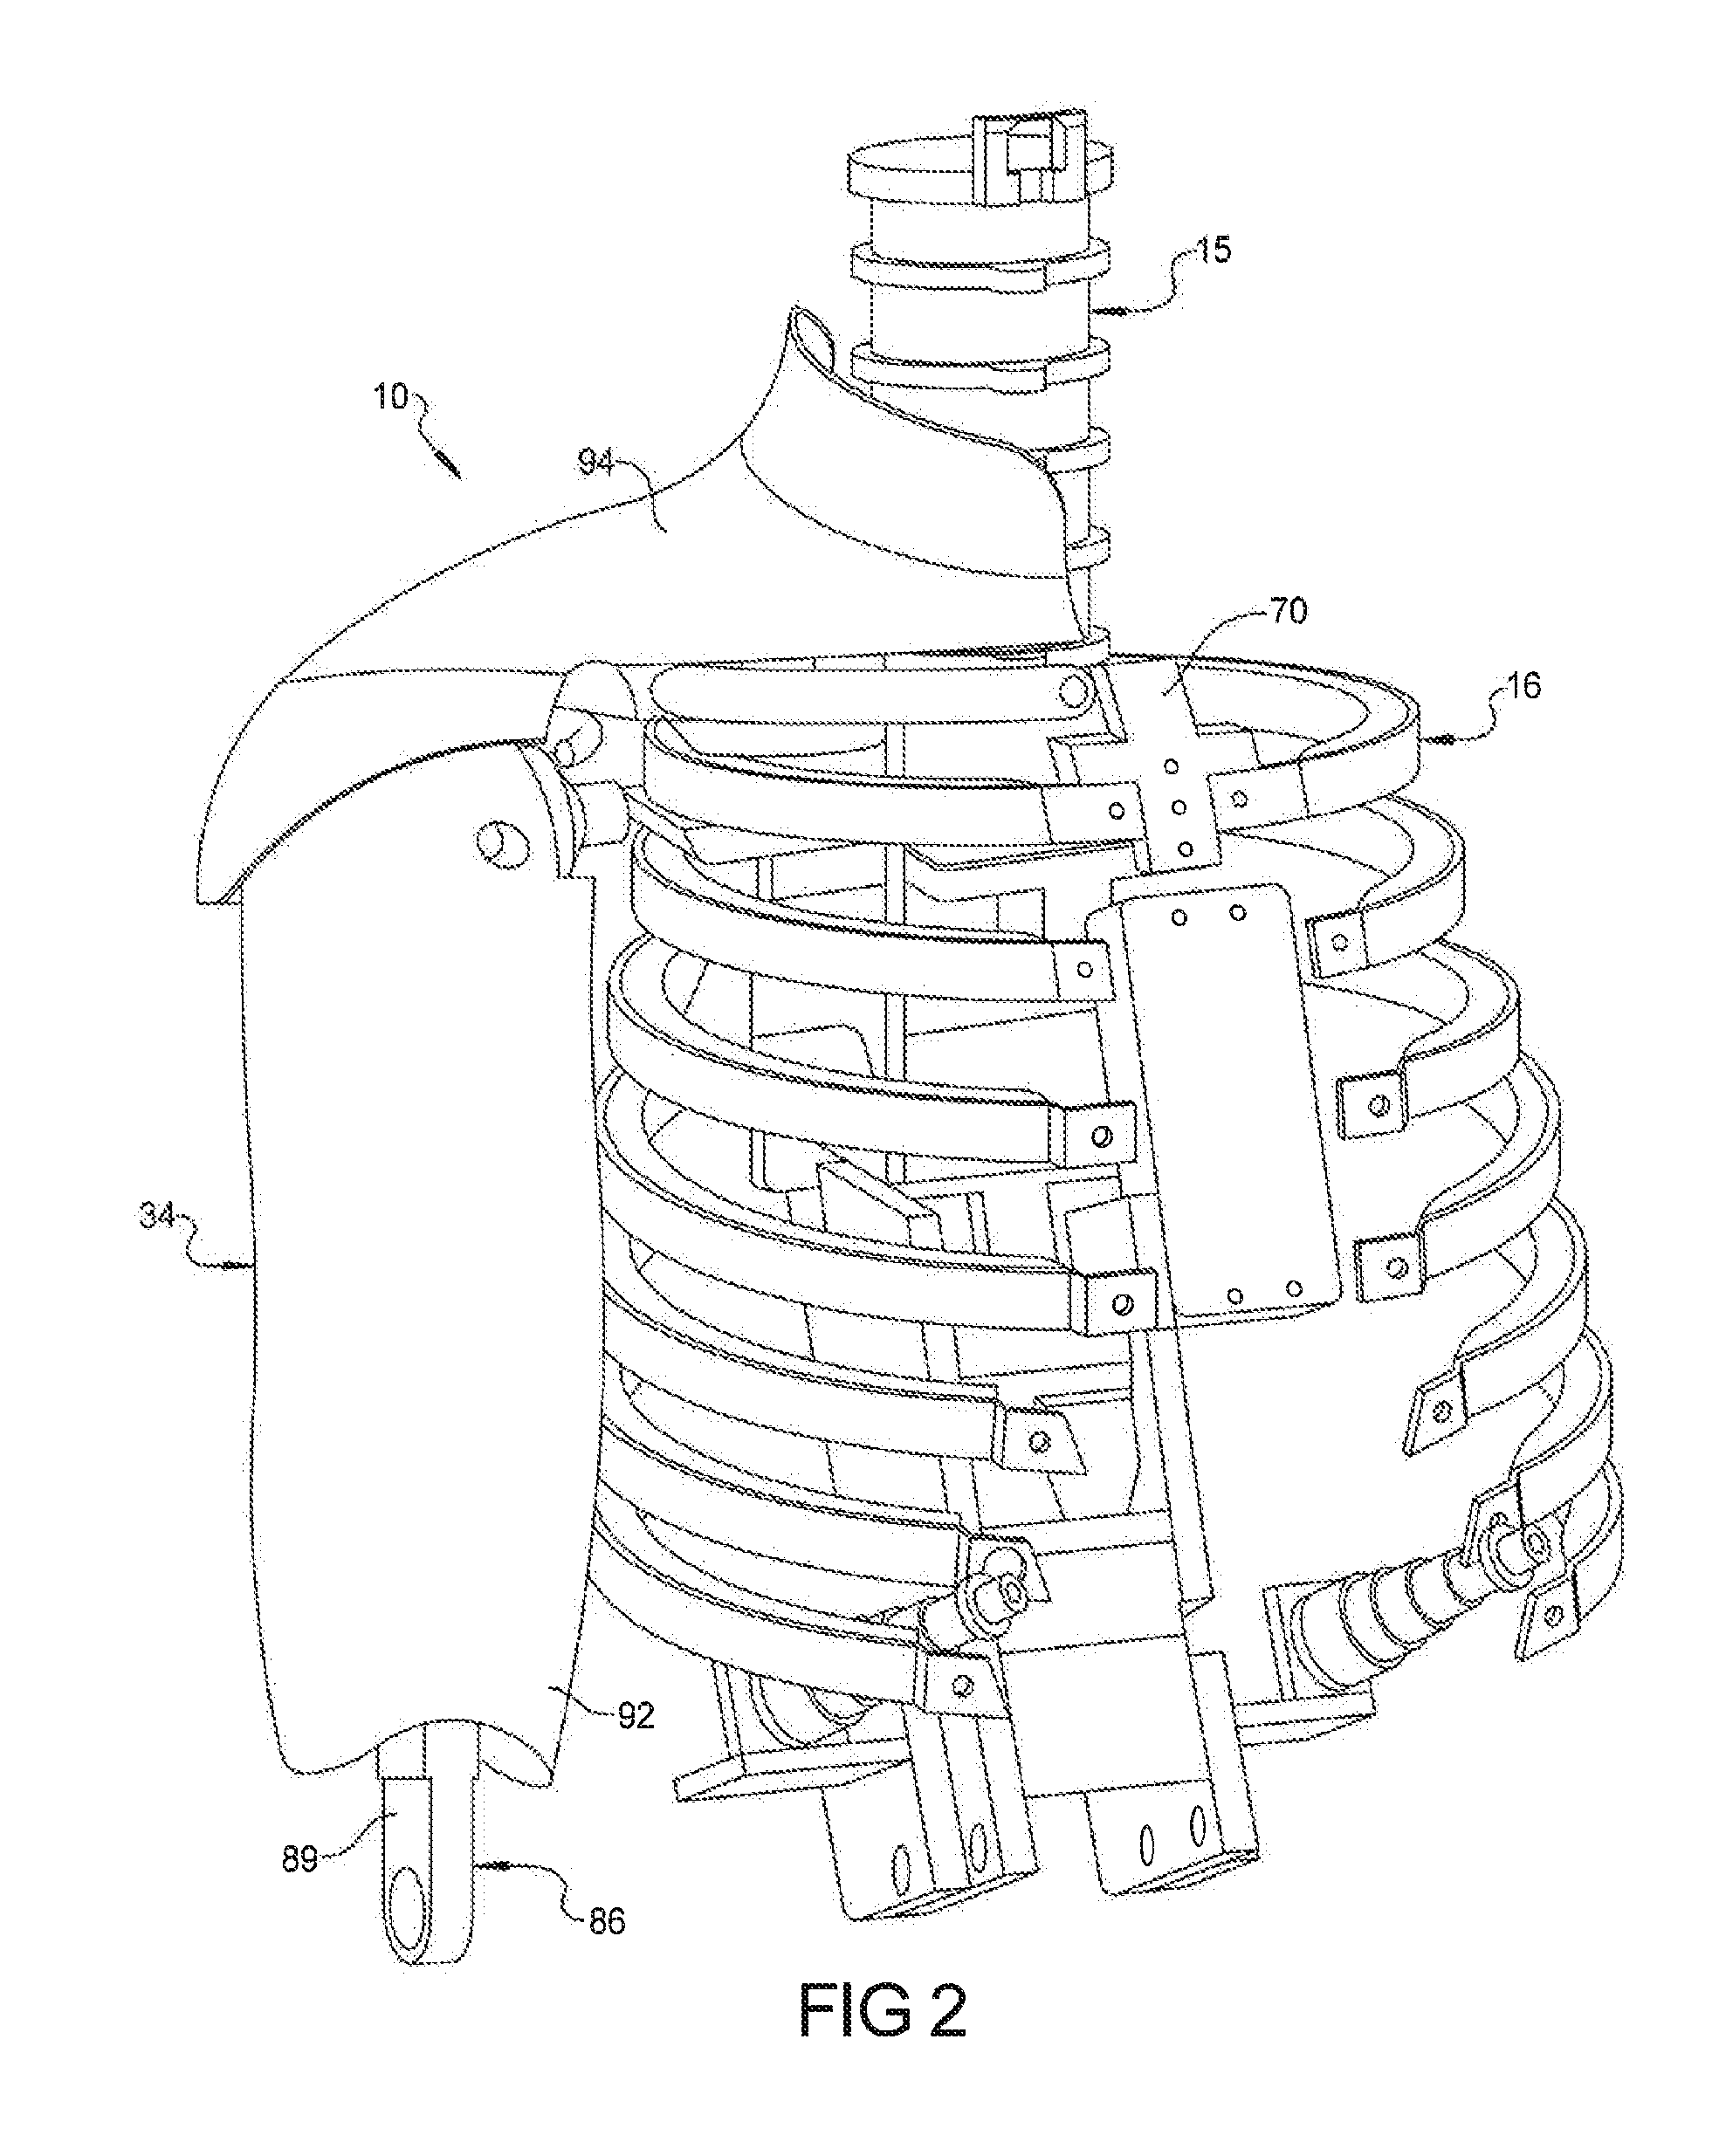 Shoulder and upper arm assembly for crash test dummy